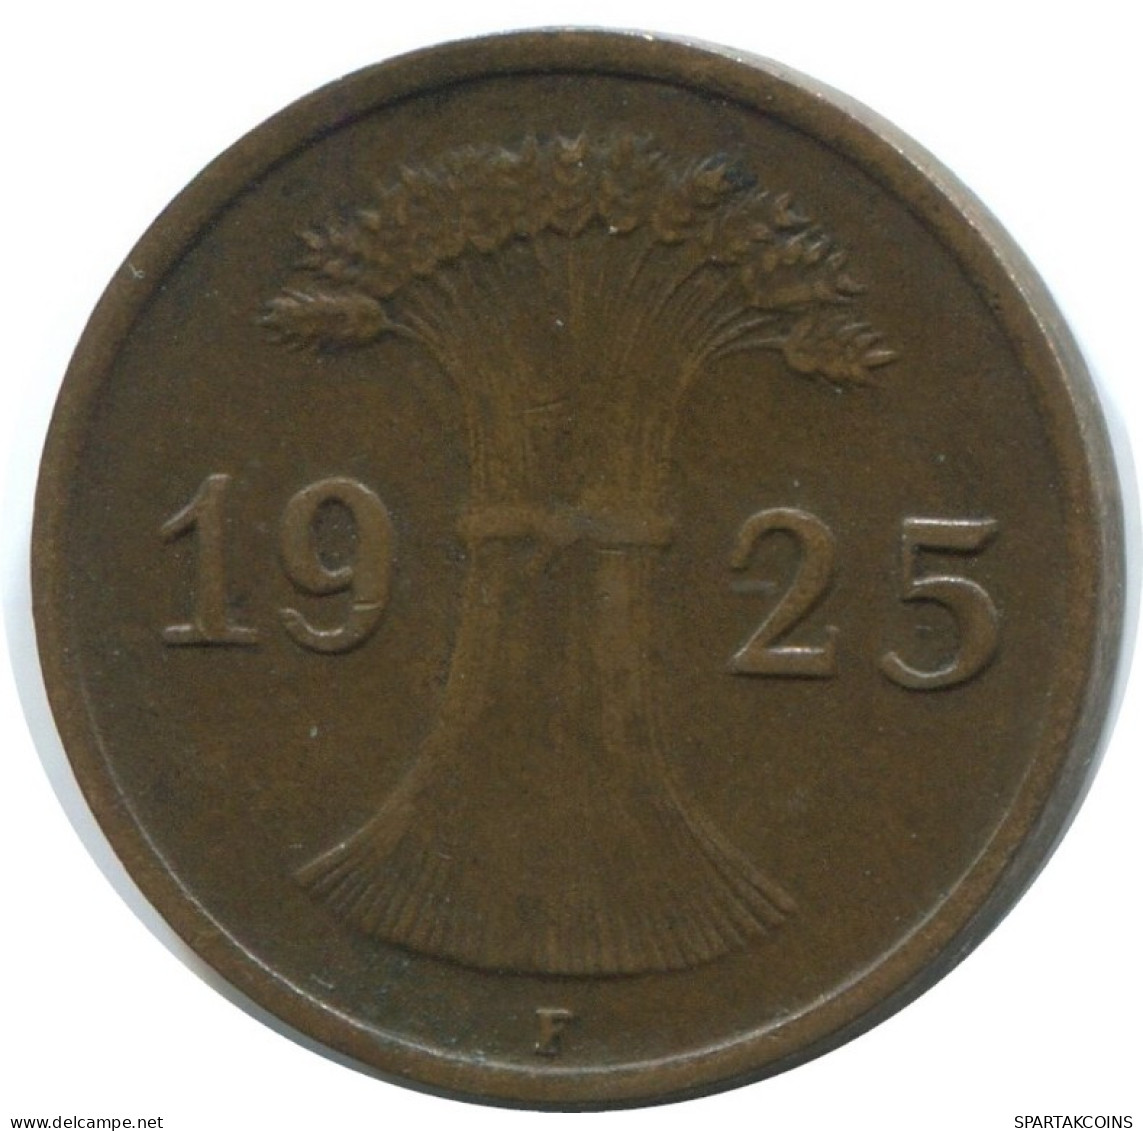 1 REICHSPFENNIG 1925 F ALLEMAGNE Pièce GERMANY #AE201.F.A - 1 Rentenpfennig & 1 Reichspfennig